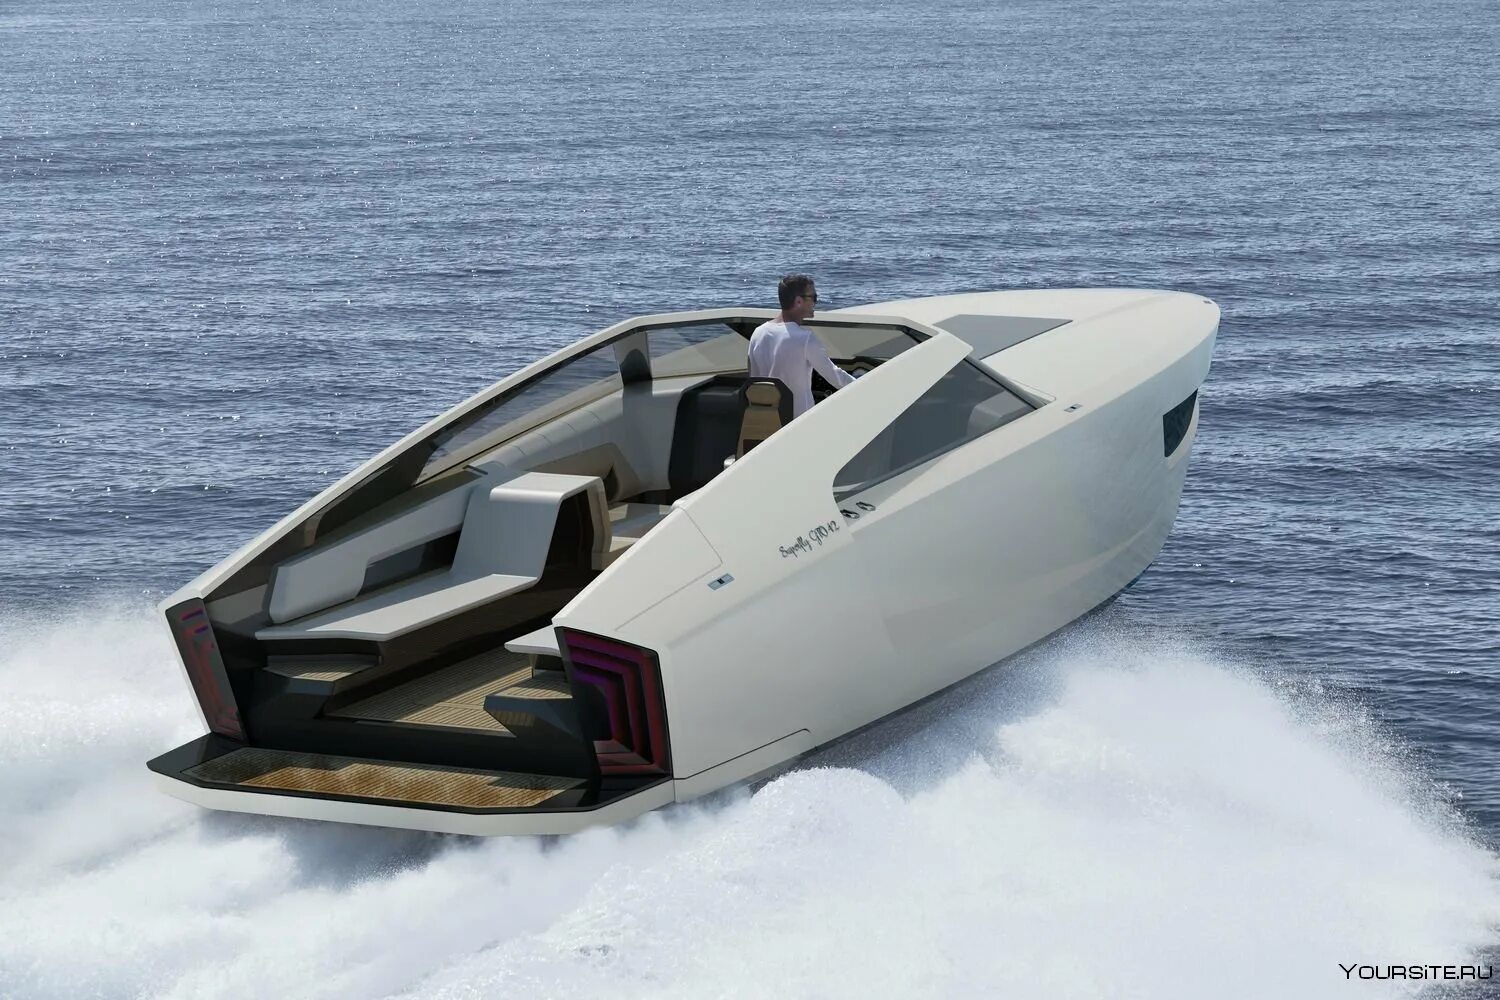 Катер Superfly gt 42. Катер Jet Boat. Катамаран Феррари. Катер Lamborghini Tecnomar 63. Самая маленькая лодка в мире